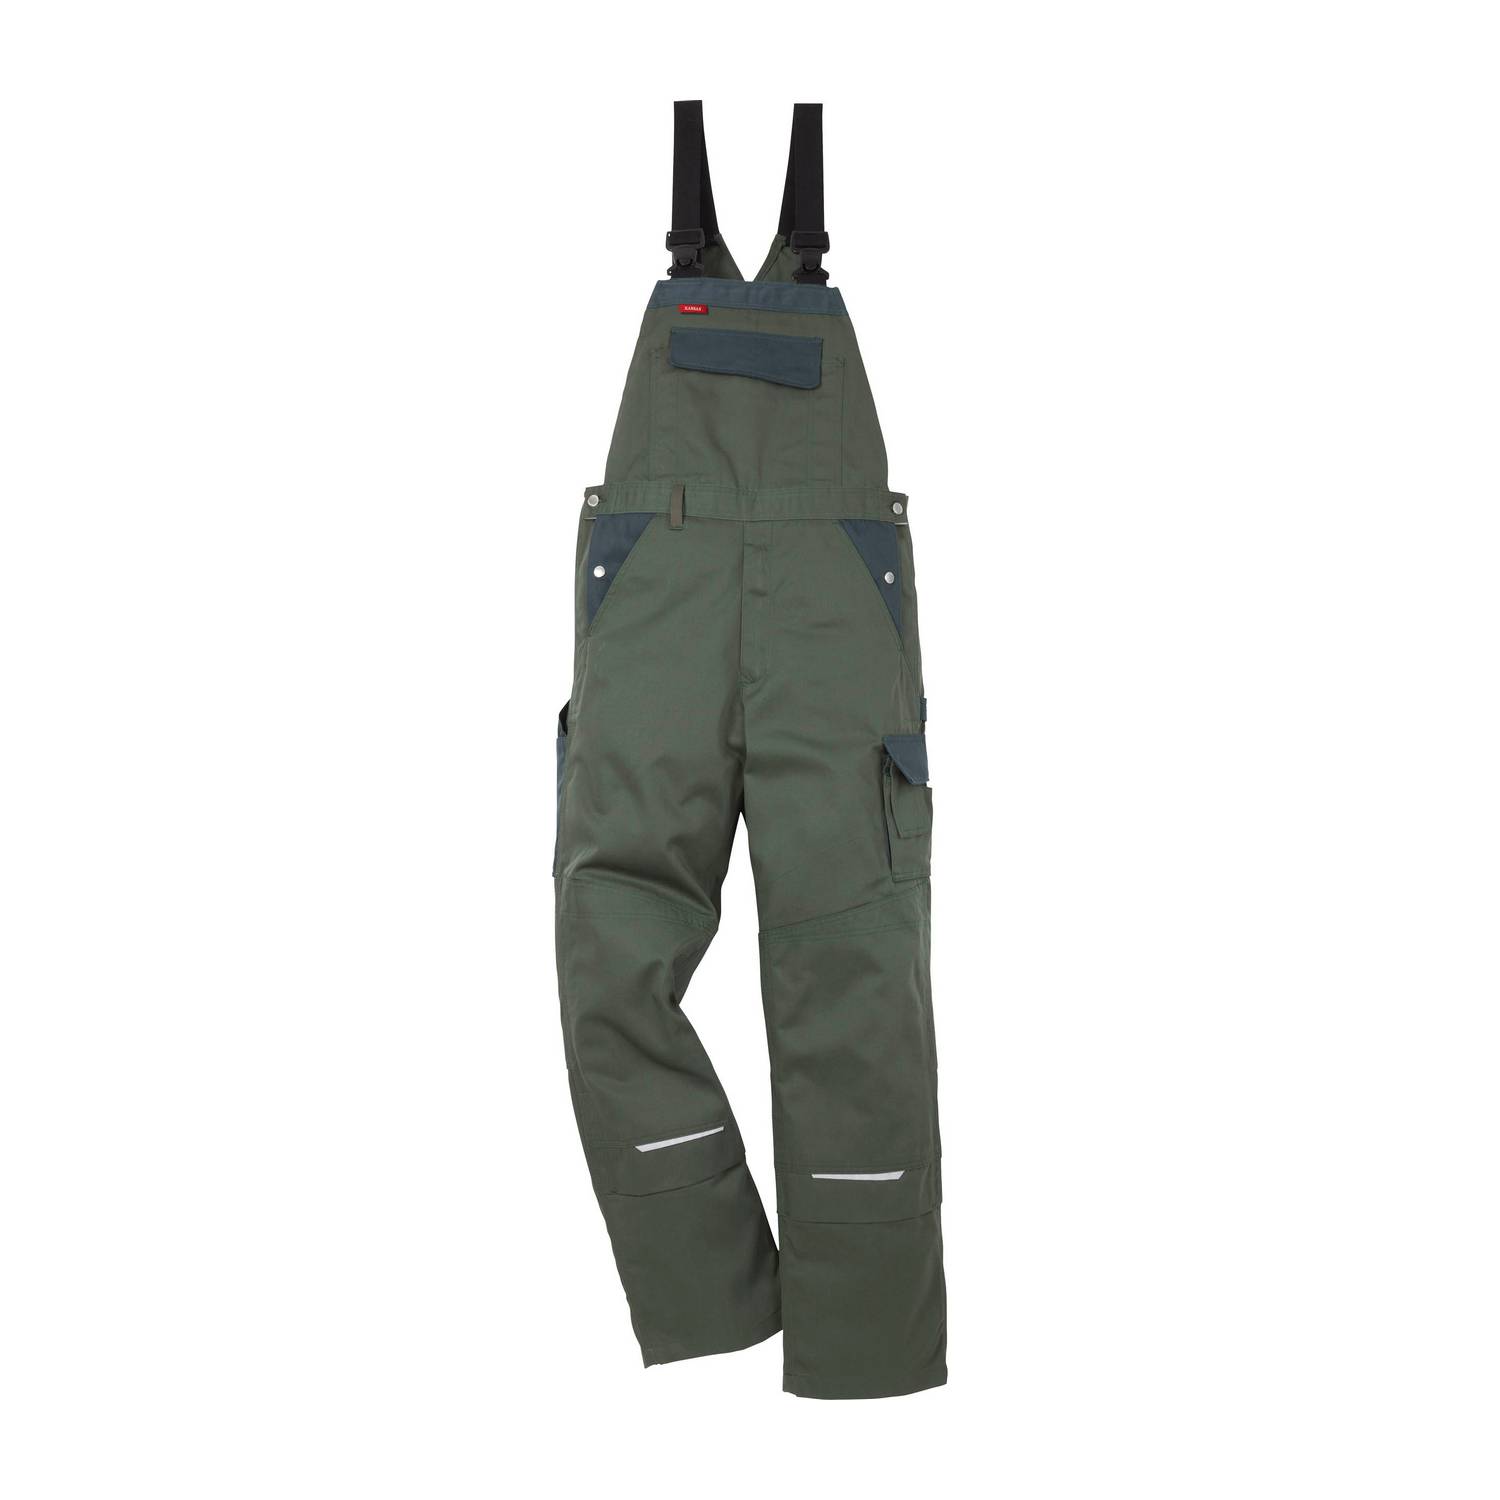 Fristads radne hlače s naramenicama 100806-781